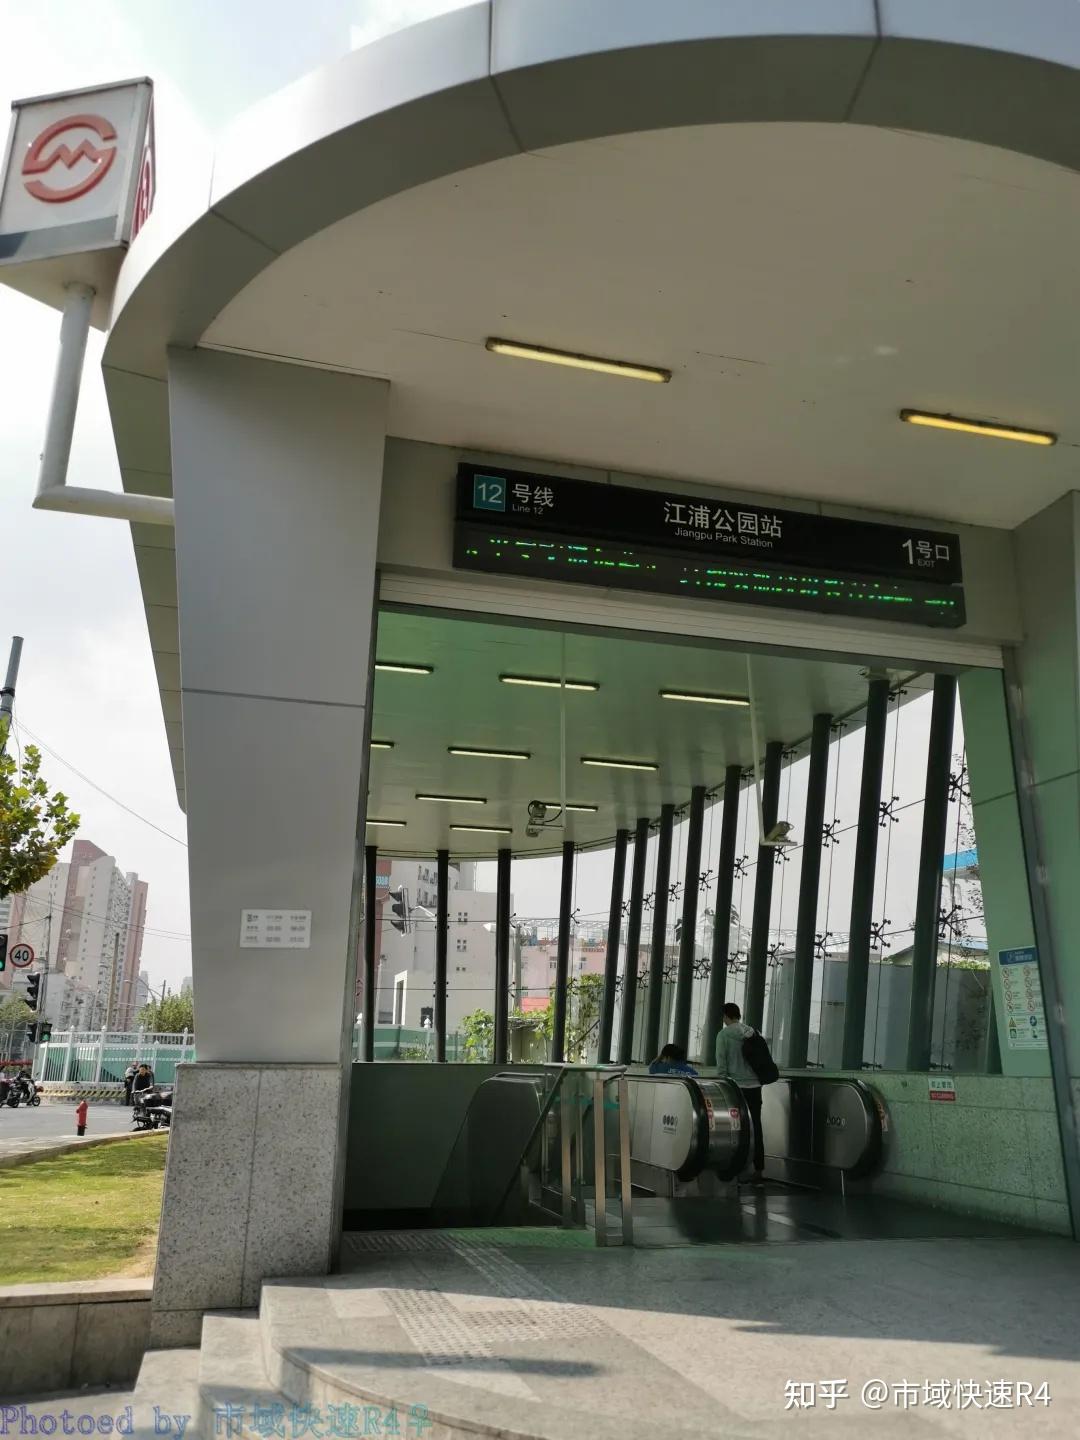 江浦公园站站外,如需去往江浦公园,请从1号口出站江浦公园站站厅层,12